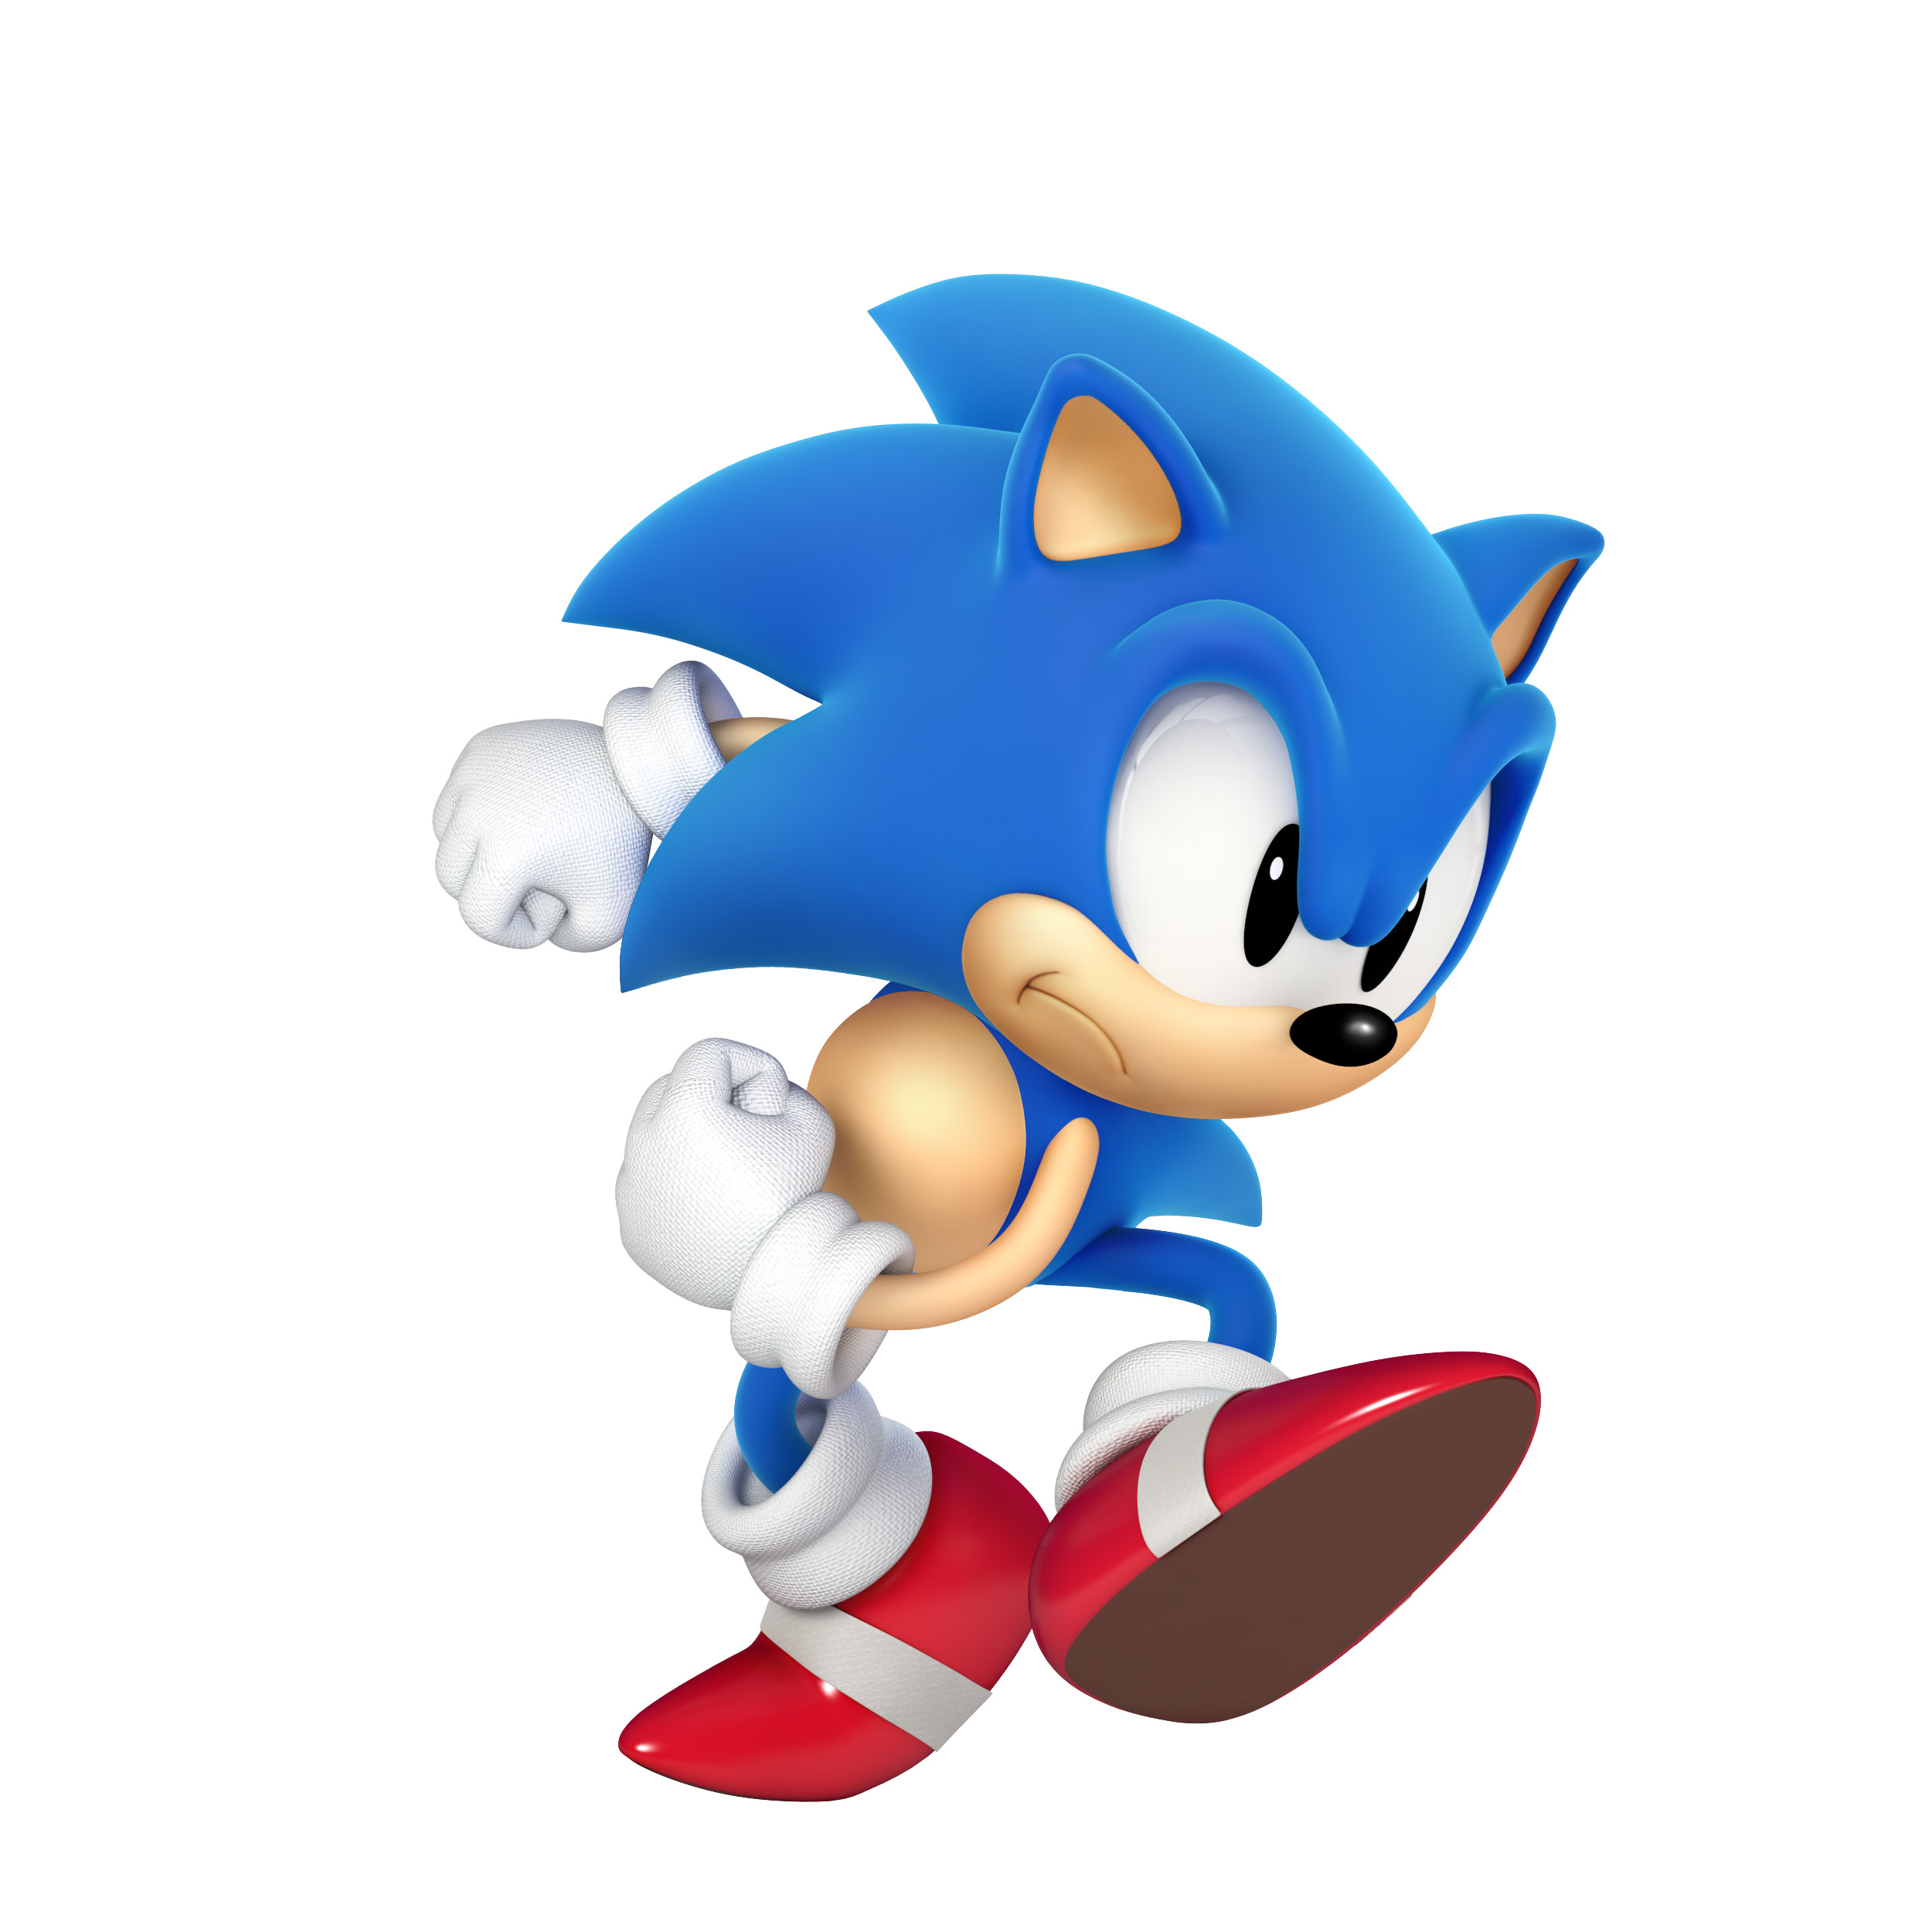 Sonic the Hedgehog belegte ebenfalls den zweiten Platz